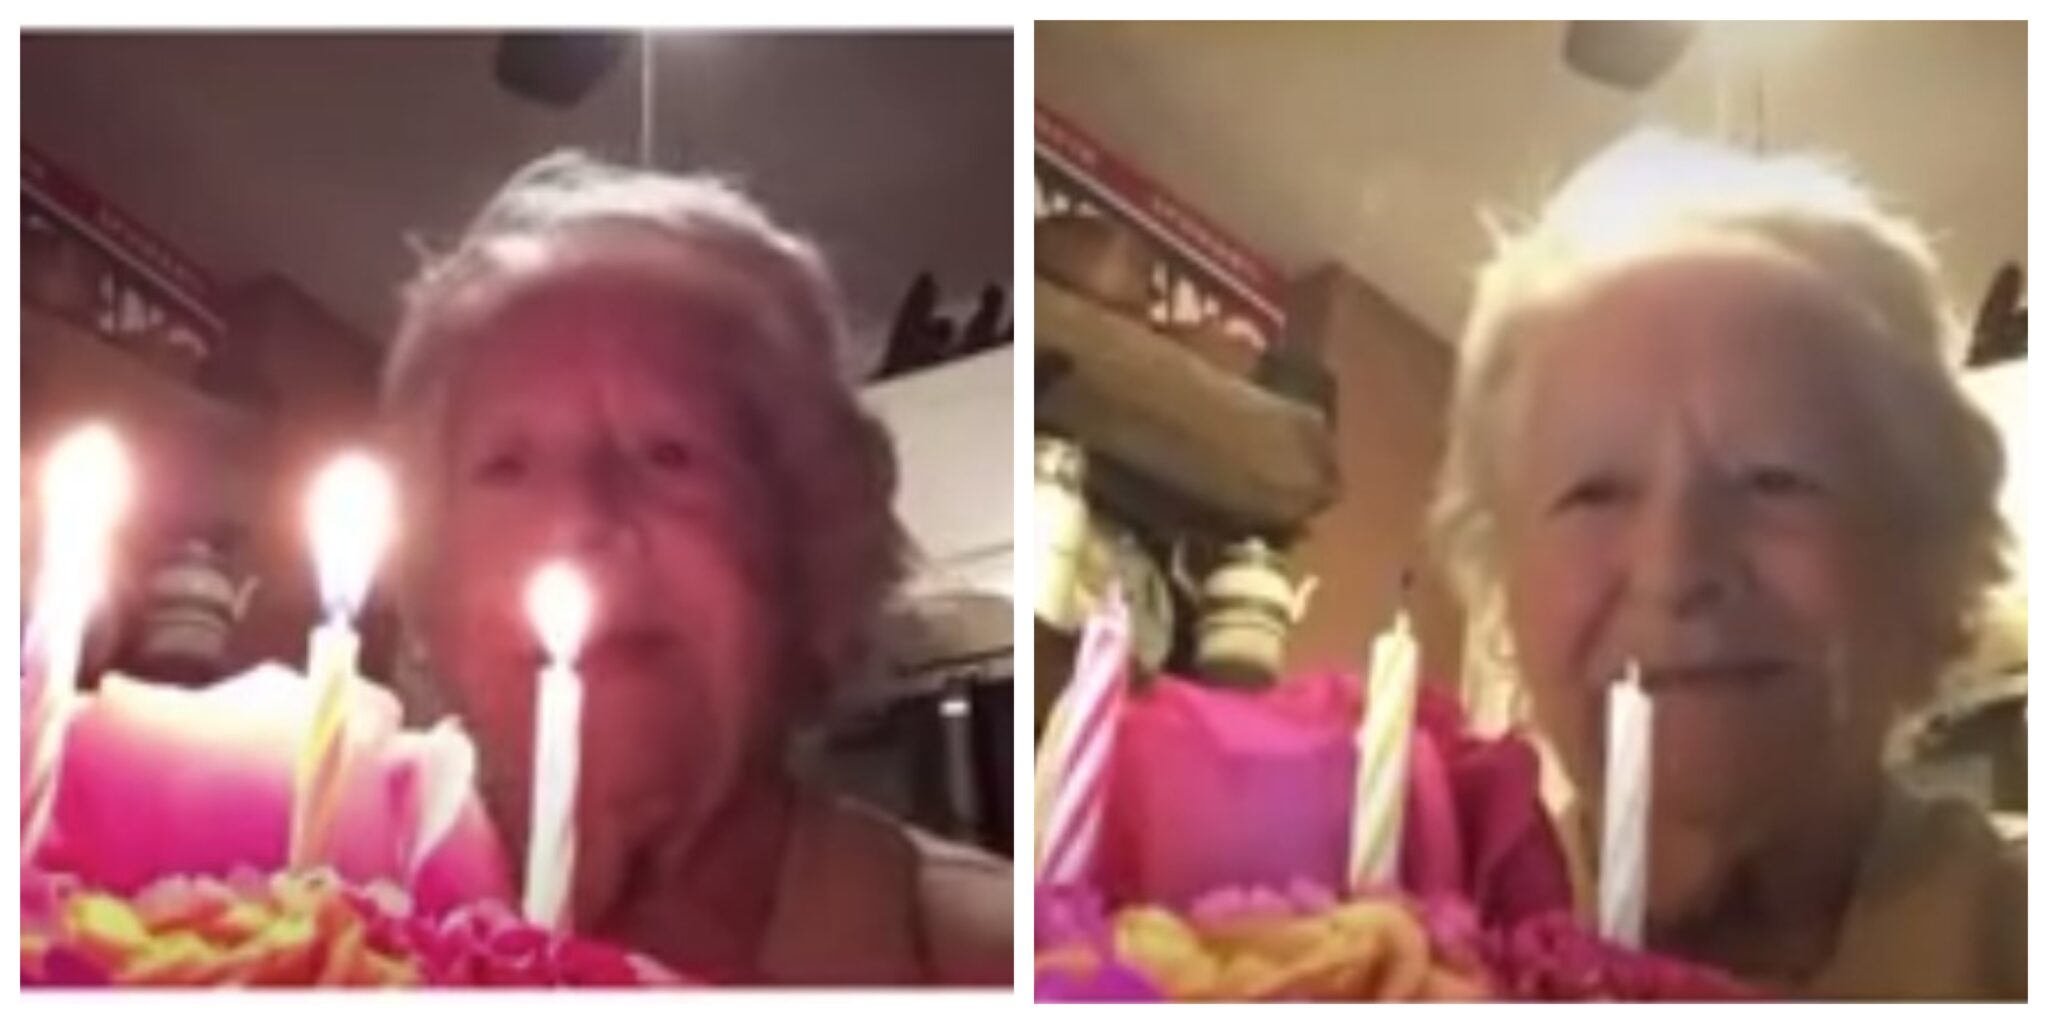 avo aniversariosozinha scaled Avó celebra 88.º aniversário sozinha e vídeo torna-se viral: "Foi a coisa mais fofa que vi"